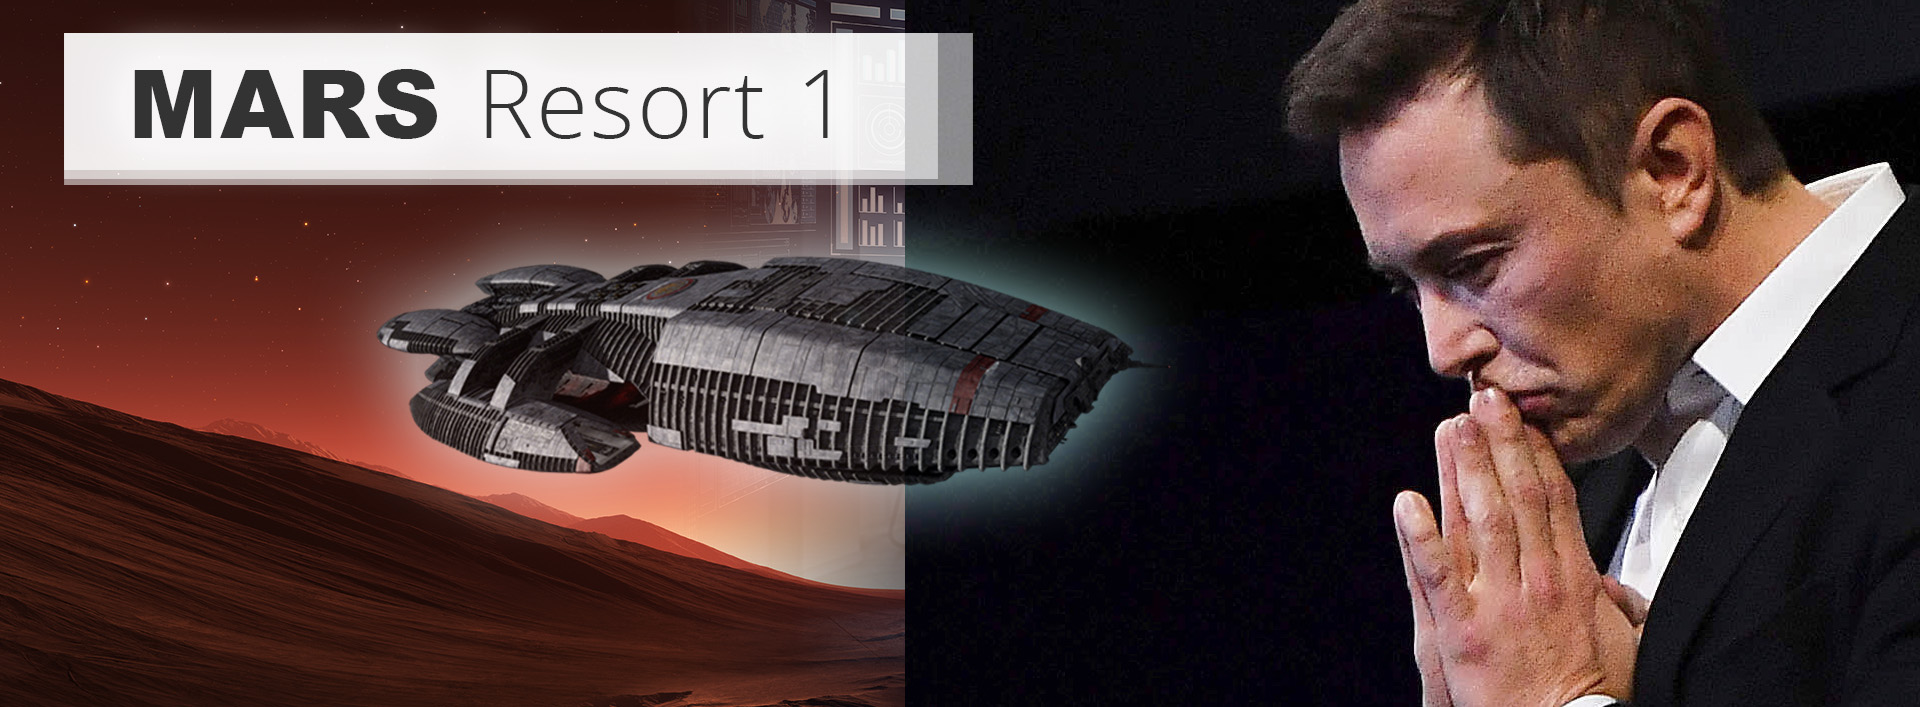 MARS-RESORT-1__Battlestar-Galactica__Elon Musk